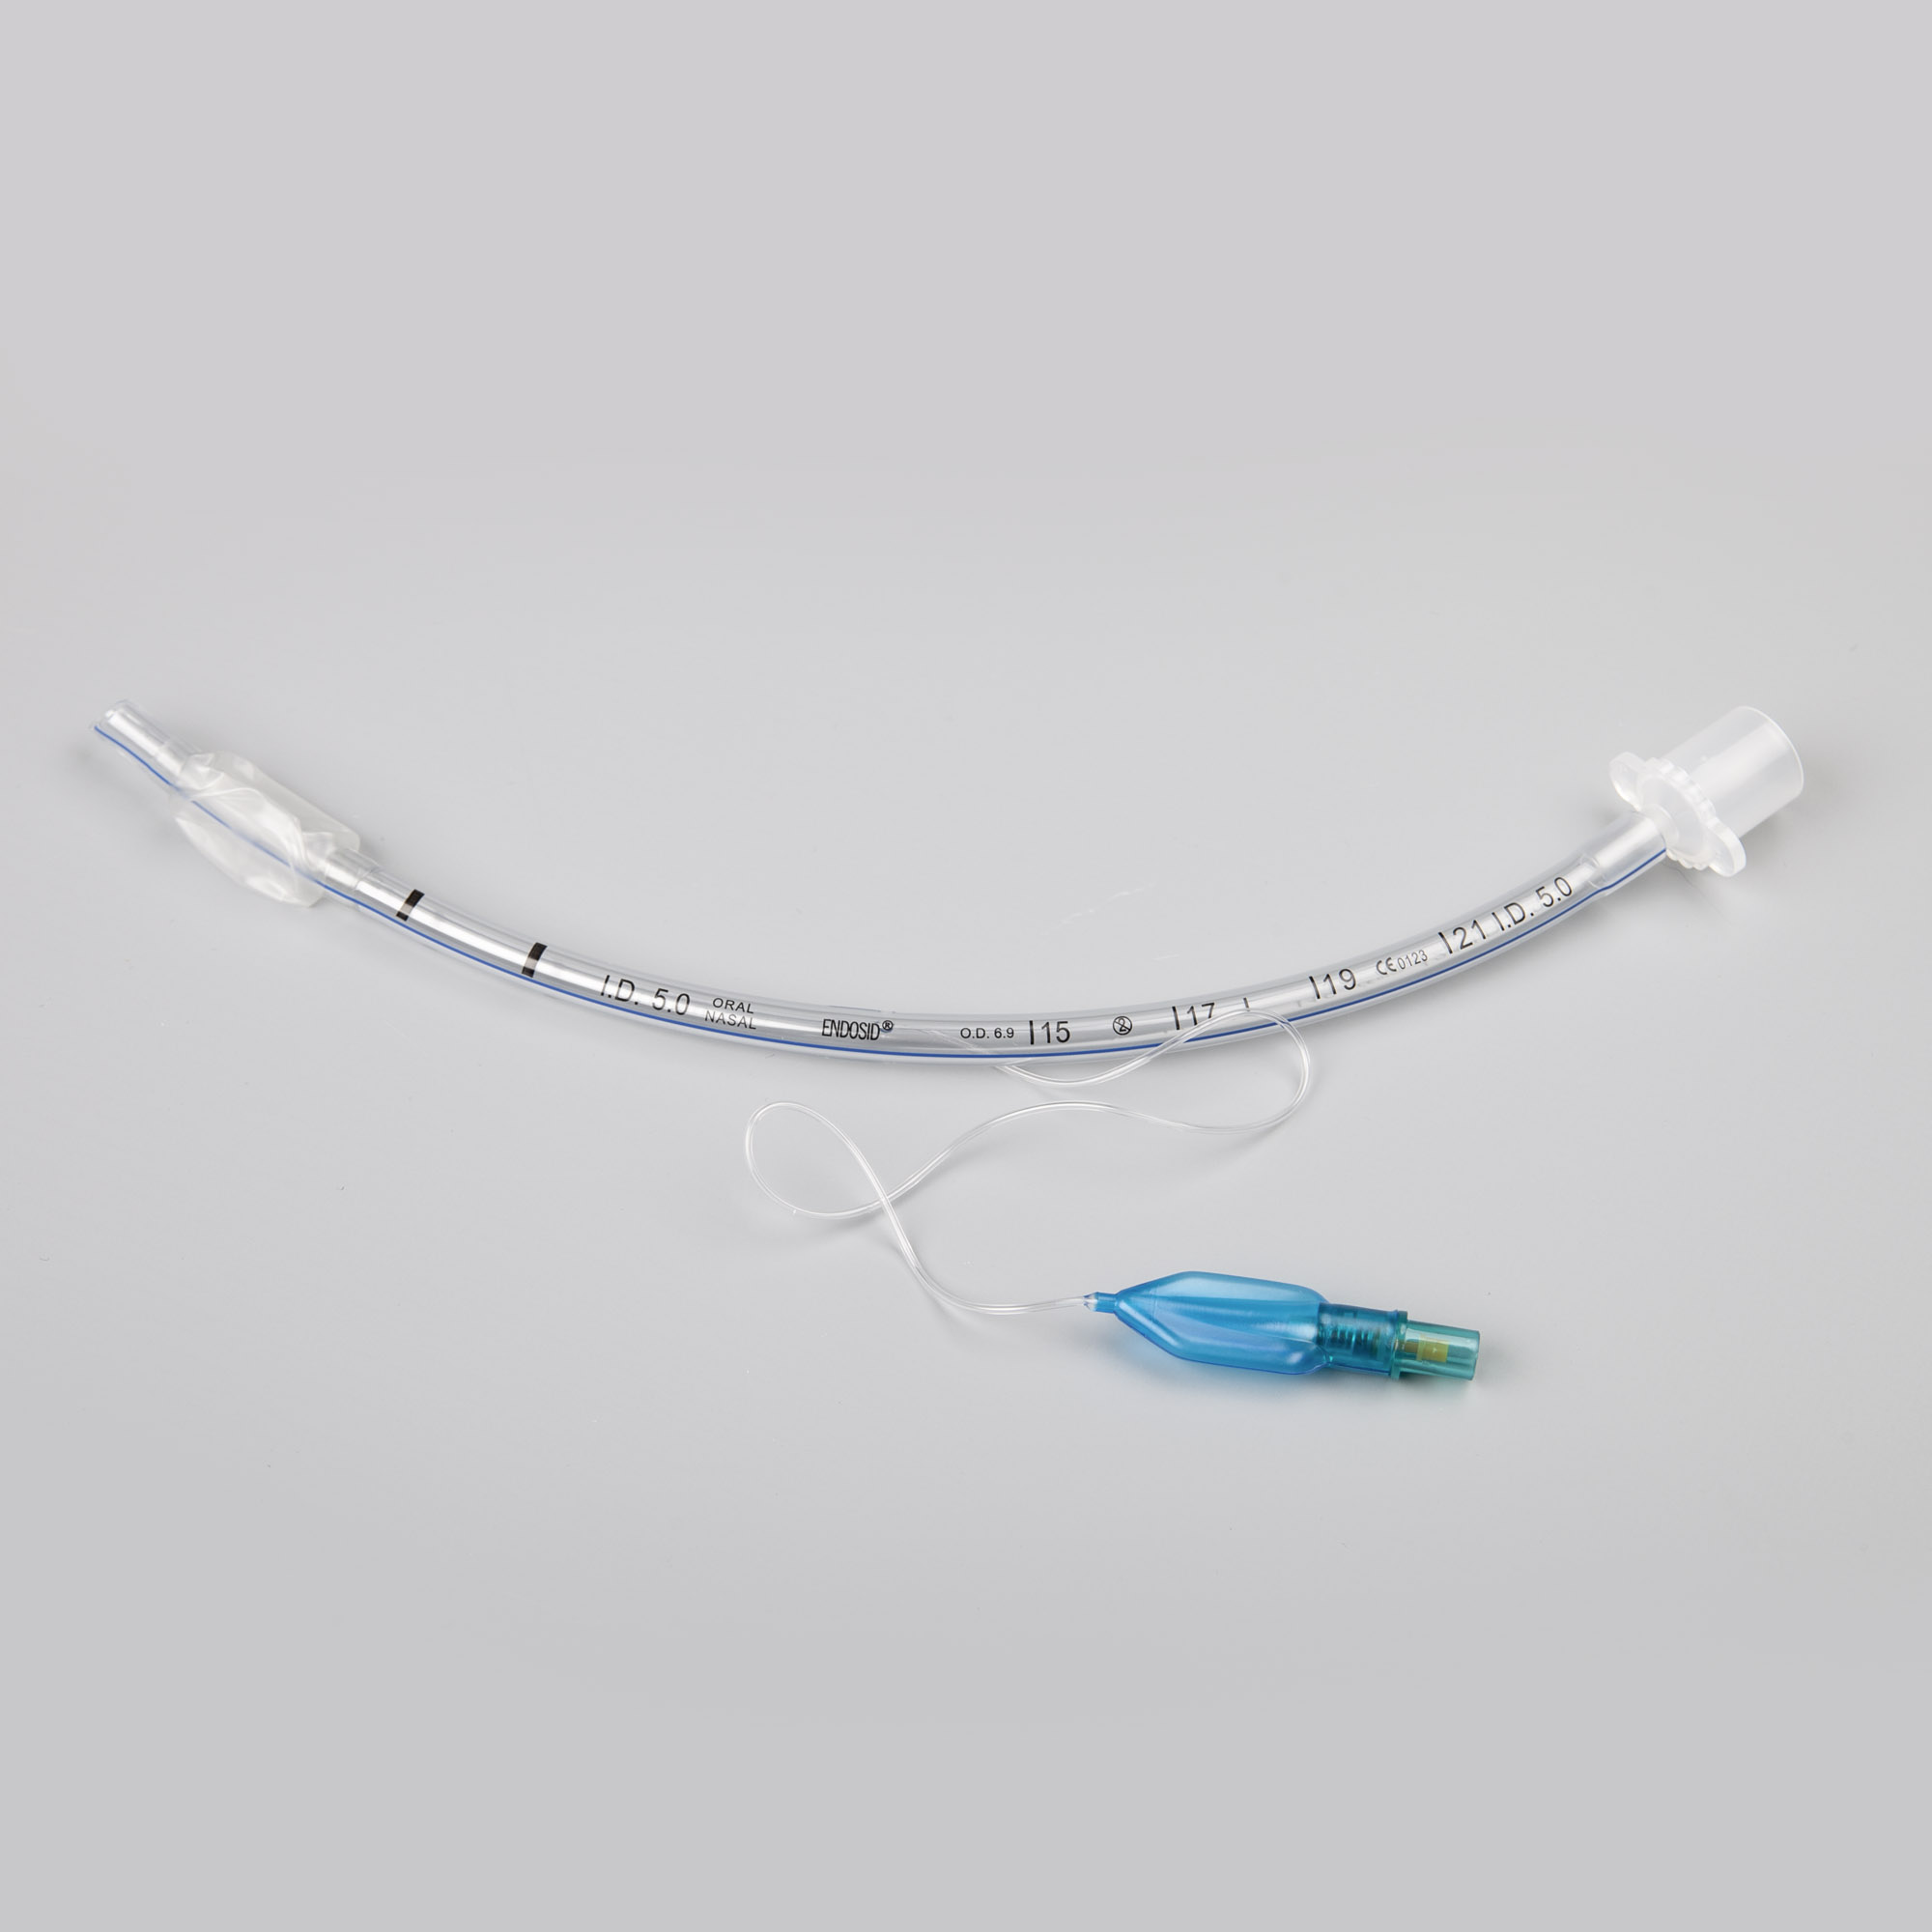 Endosid®-Tubus nasal/oral mit Cuff, Murphy-Auge und Mandrin I.D. 6,0 mm (CH 24)